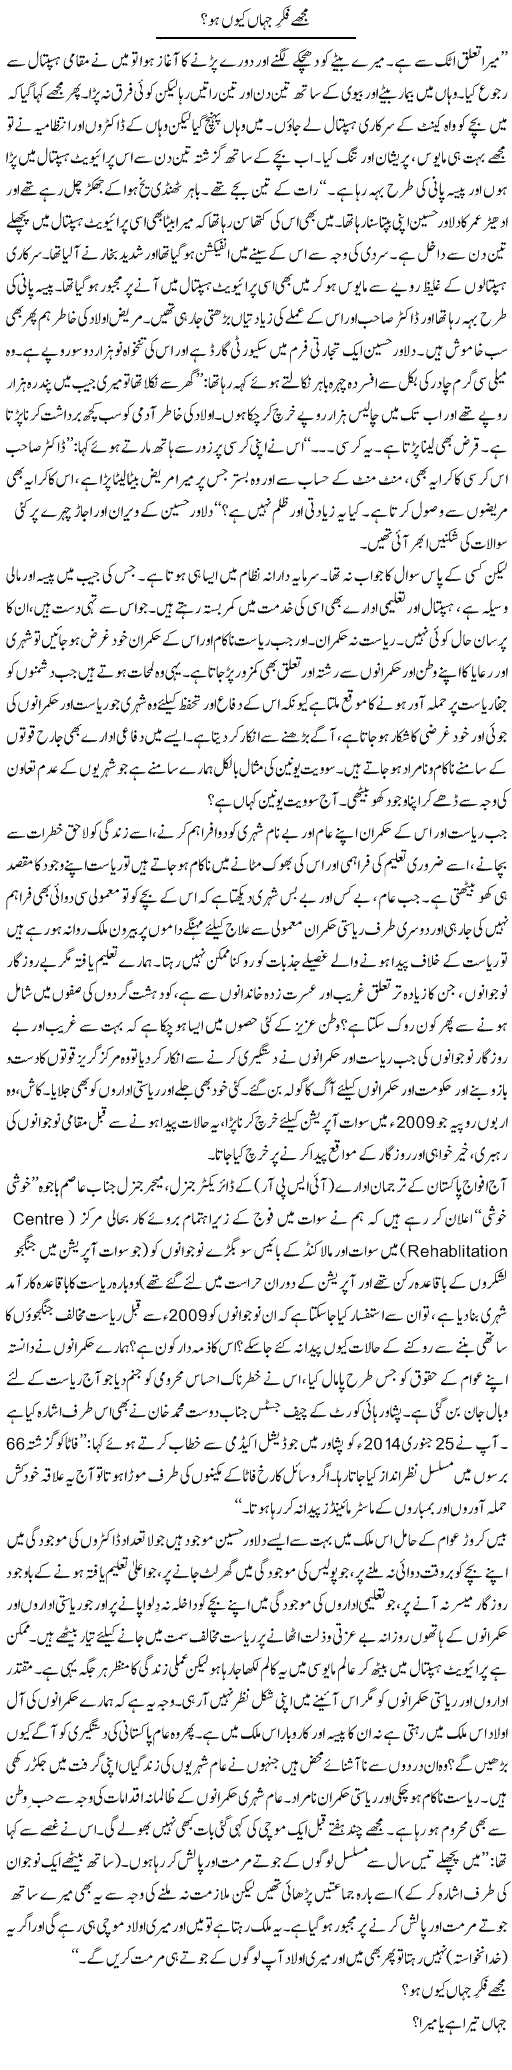 Mujhe Fikre Jahan Q Ho | Tanveer Qaisar Shahid | Daily Urdu Columns